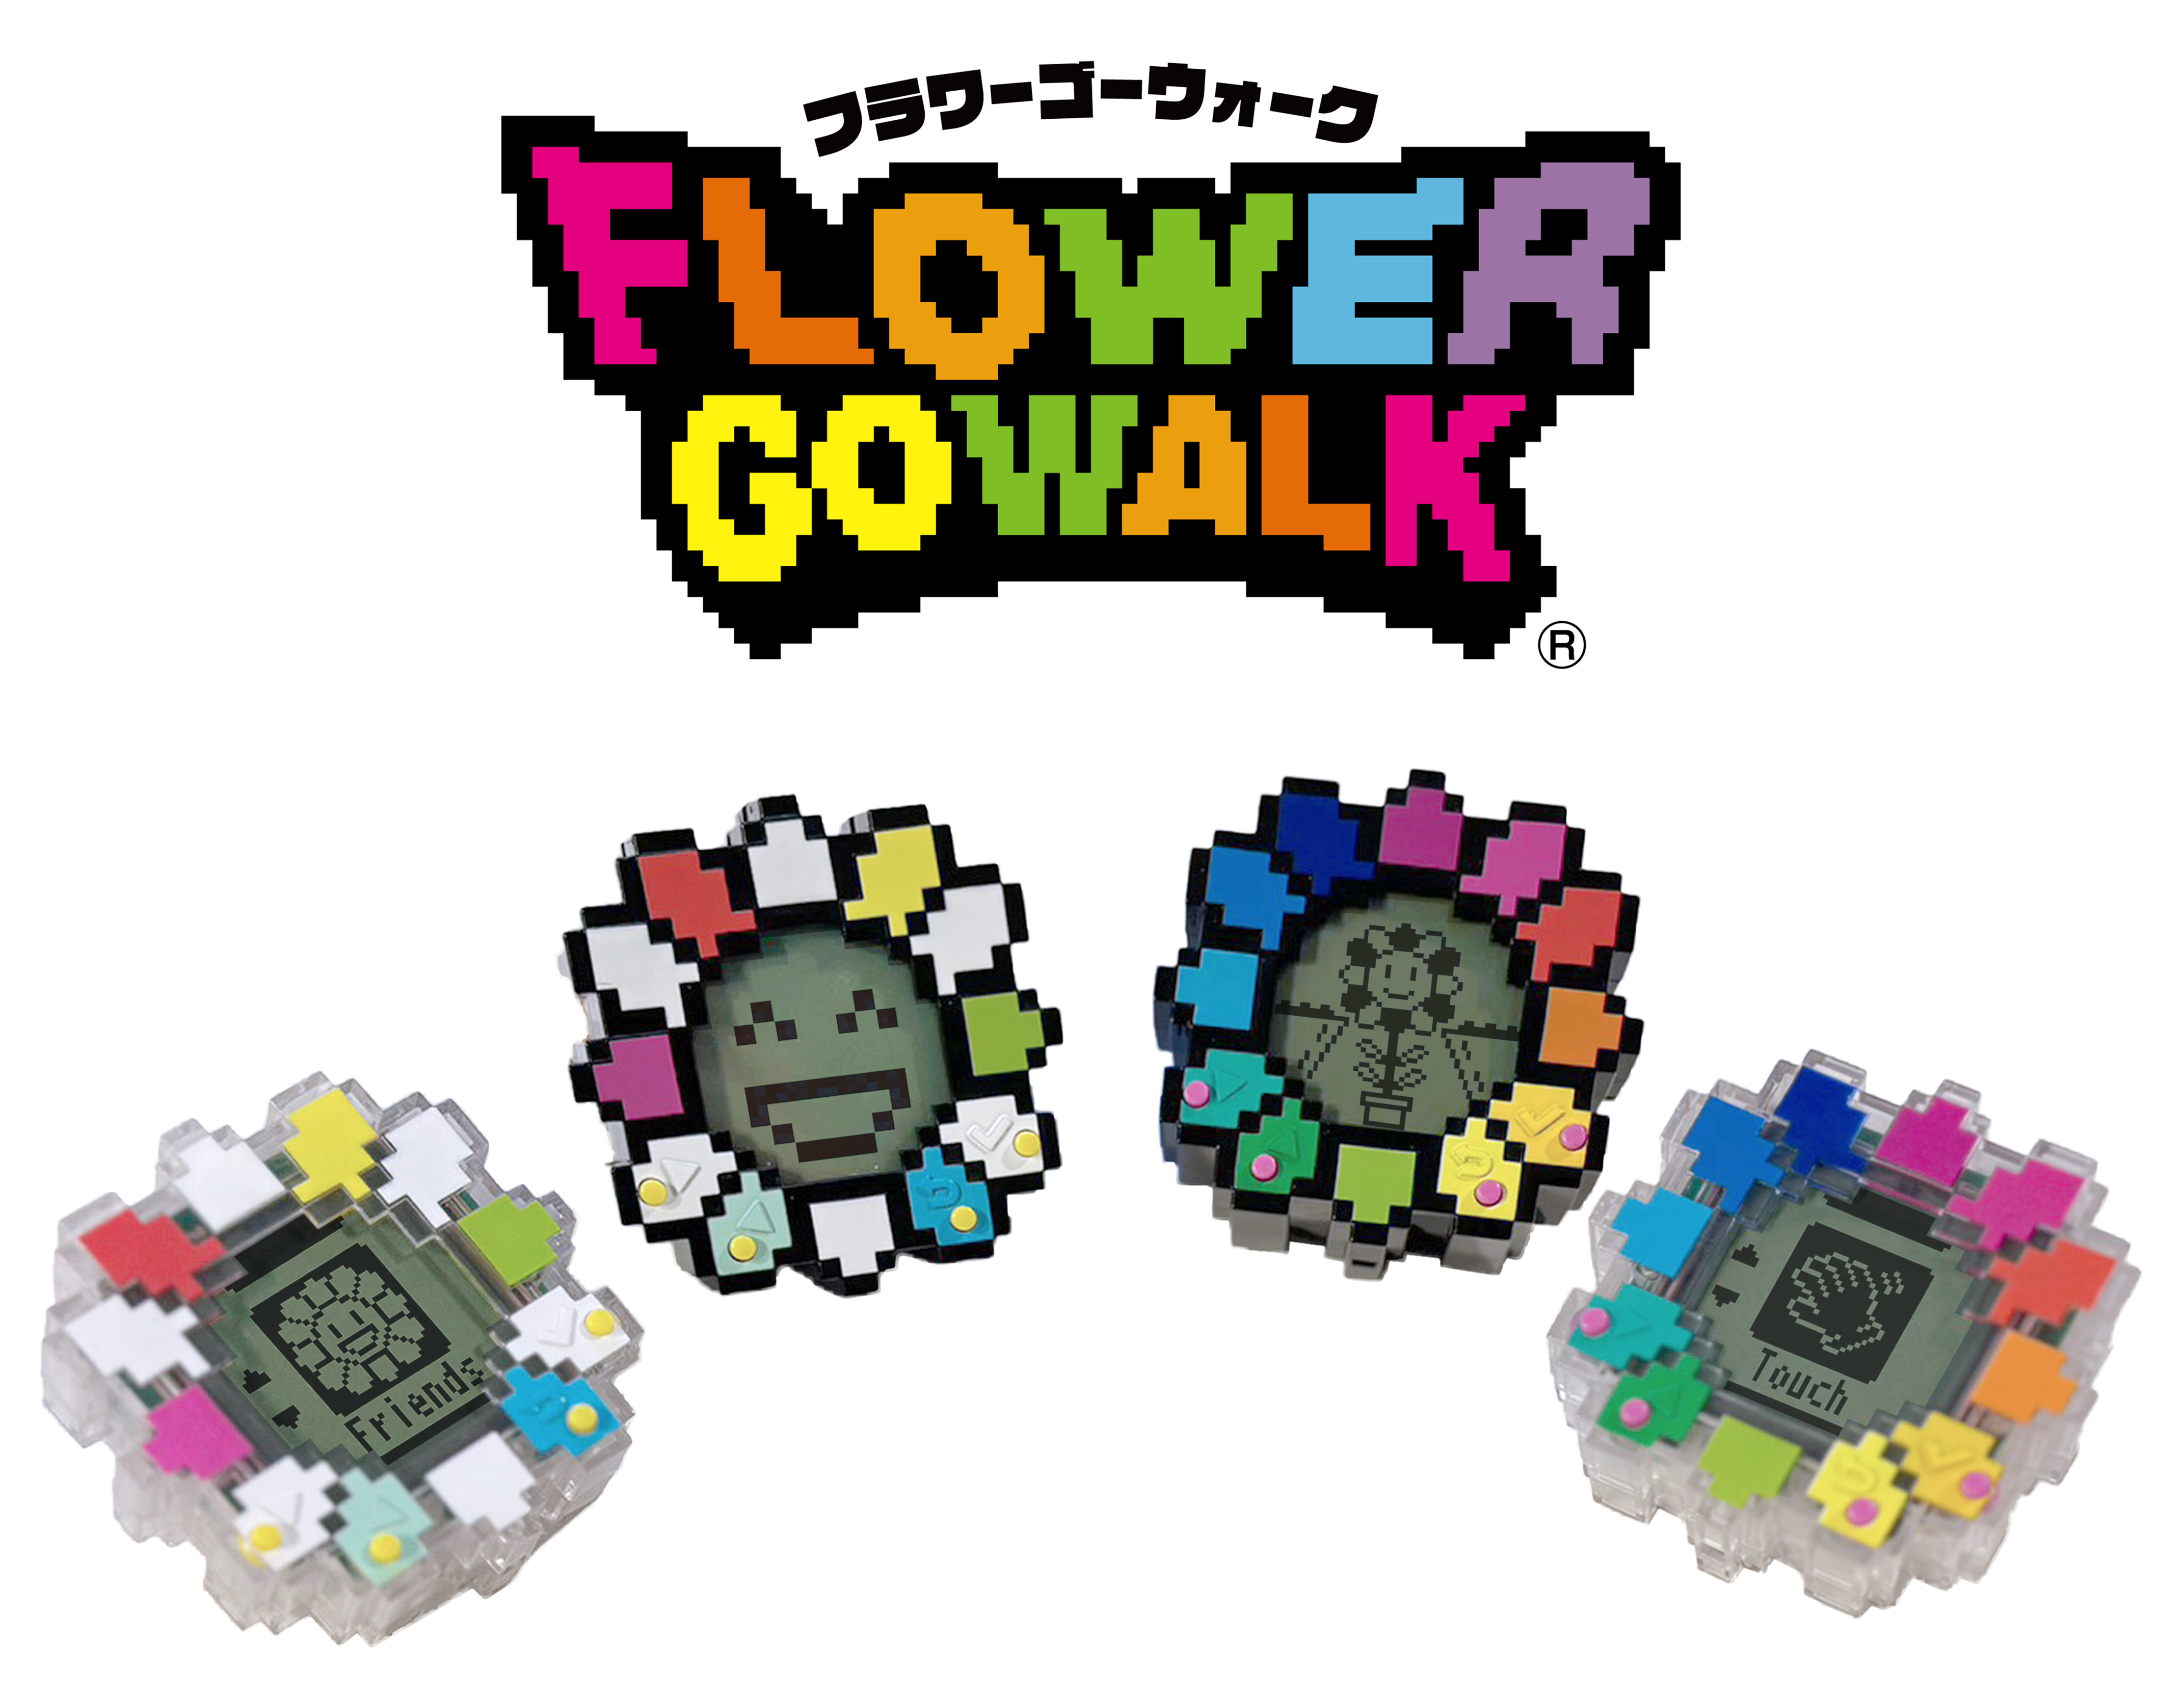 村上隆 flower go walk / Shoulder Strap